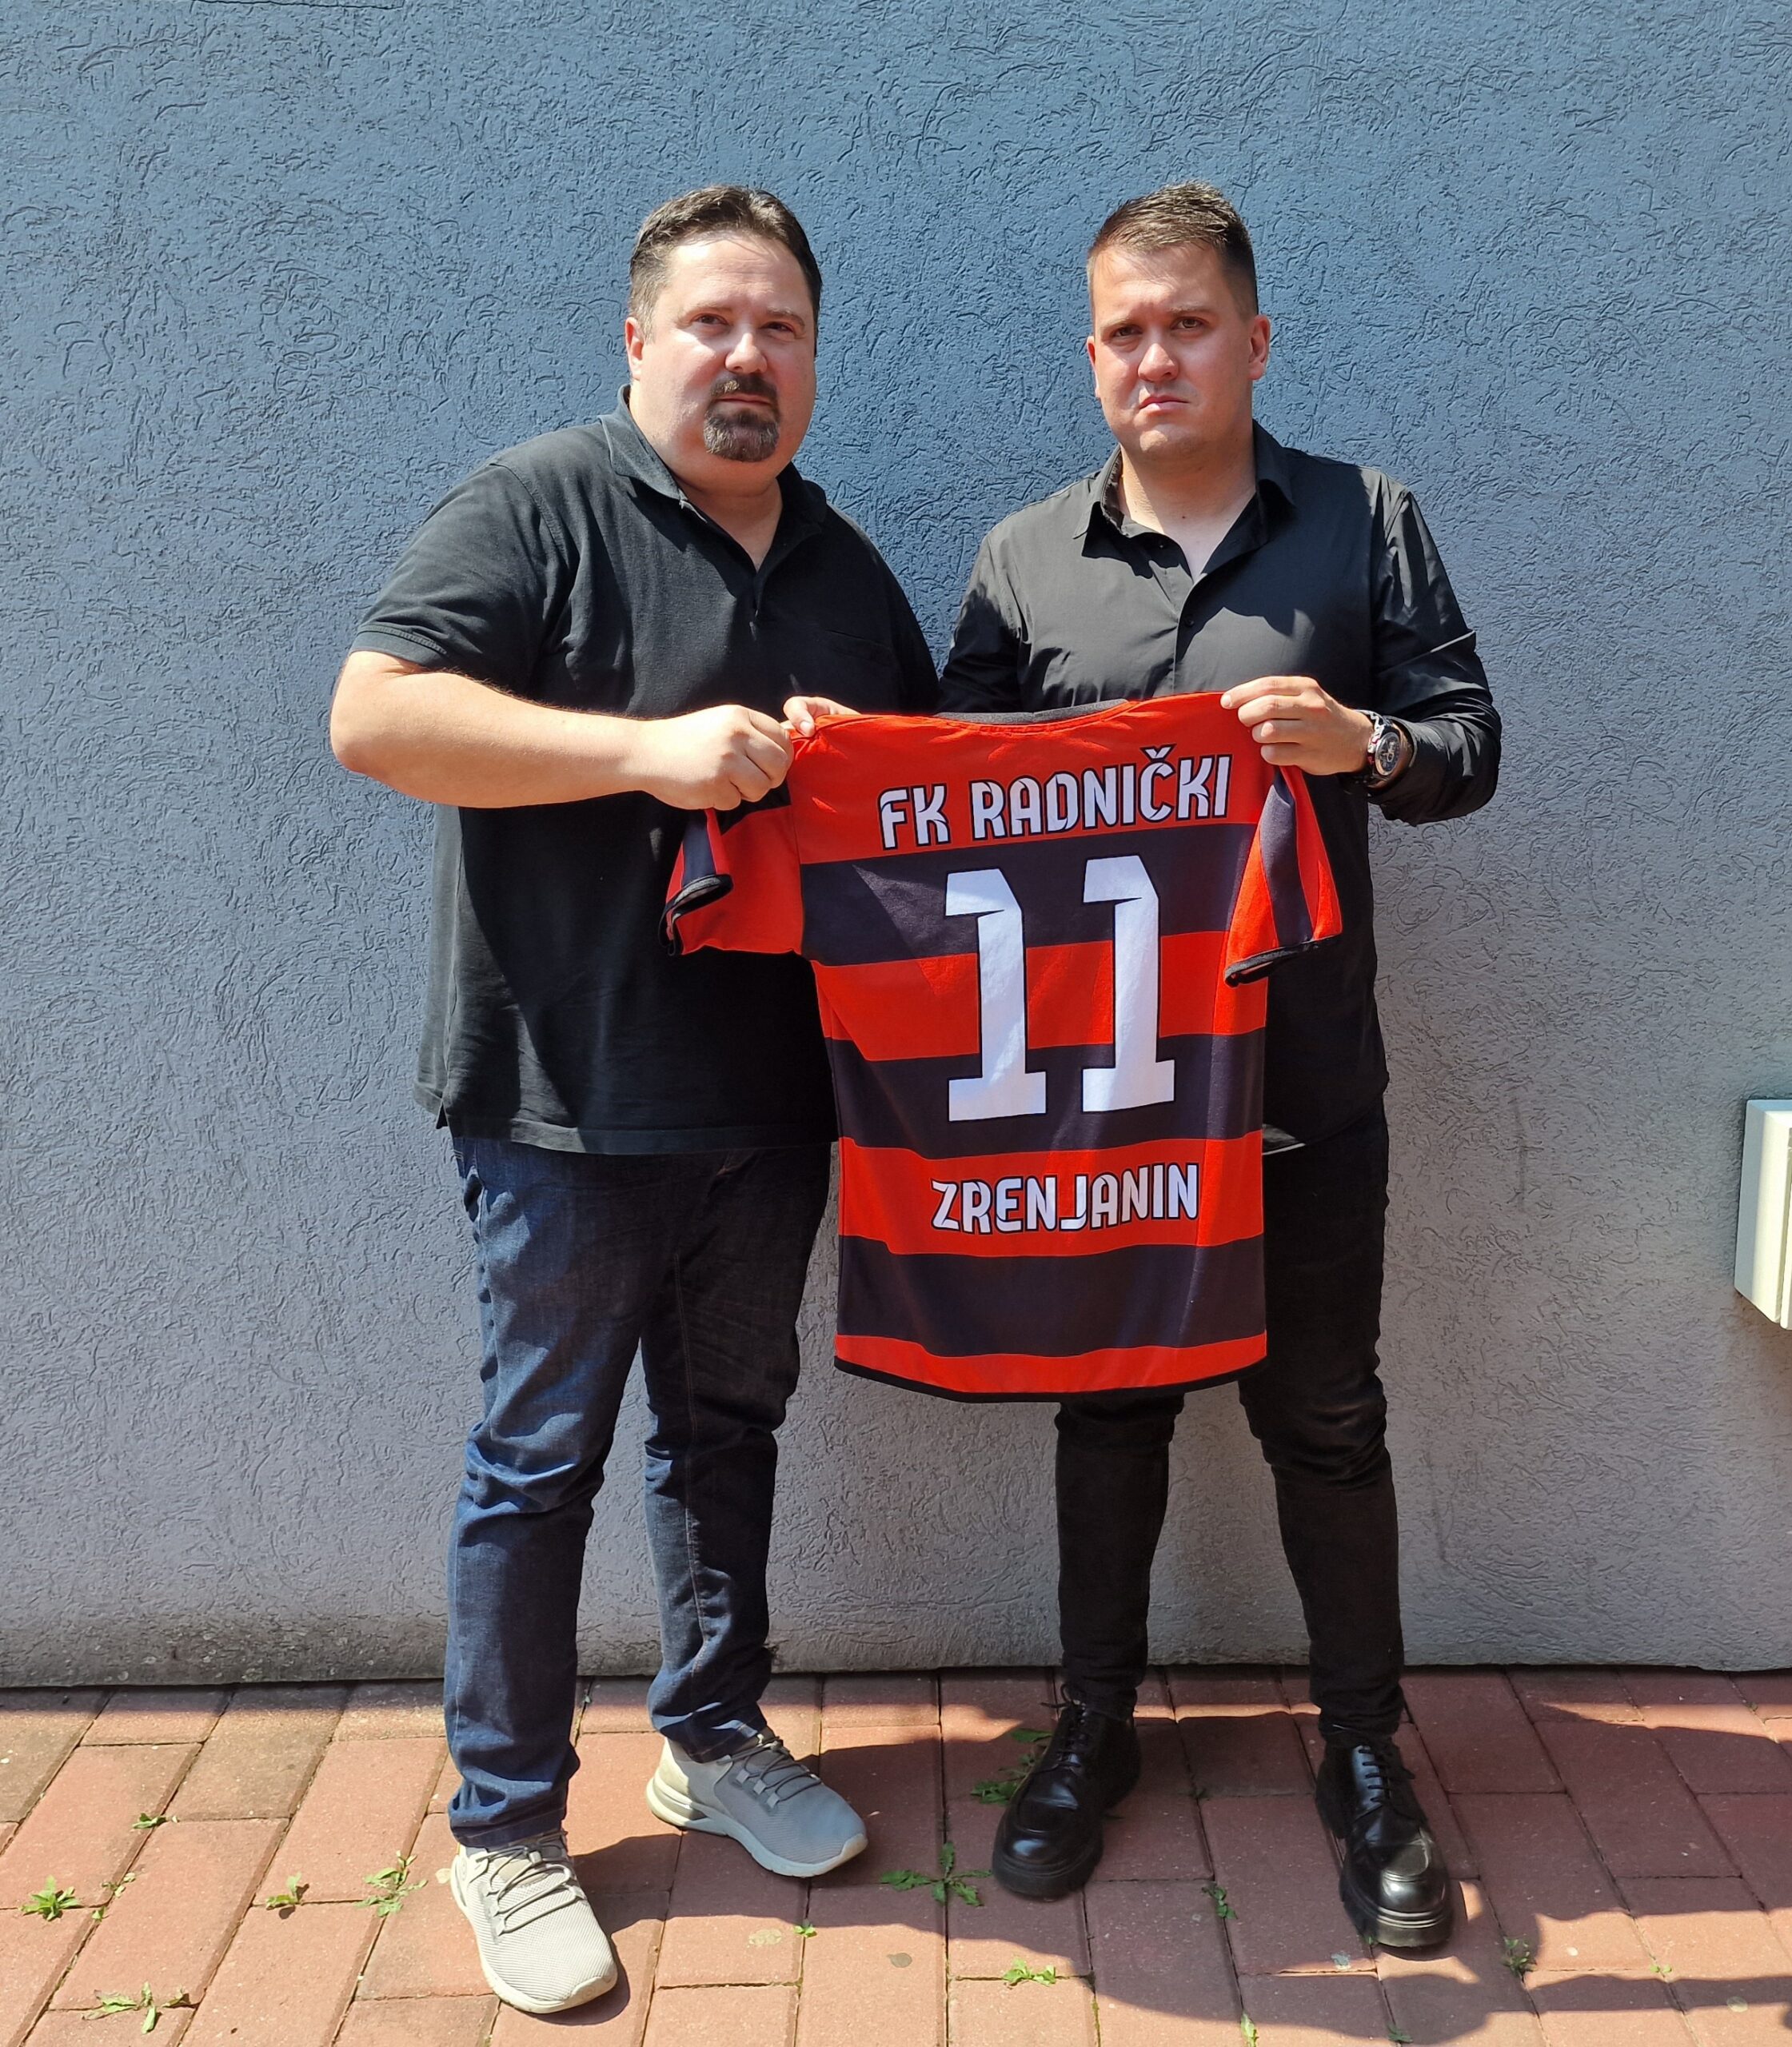 FK Radnički Zrenjanin (@radnickizrenjanin_official) • Instagram